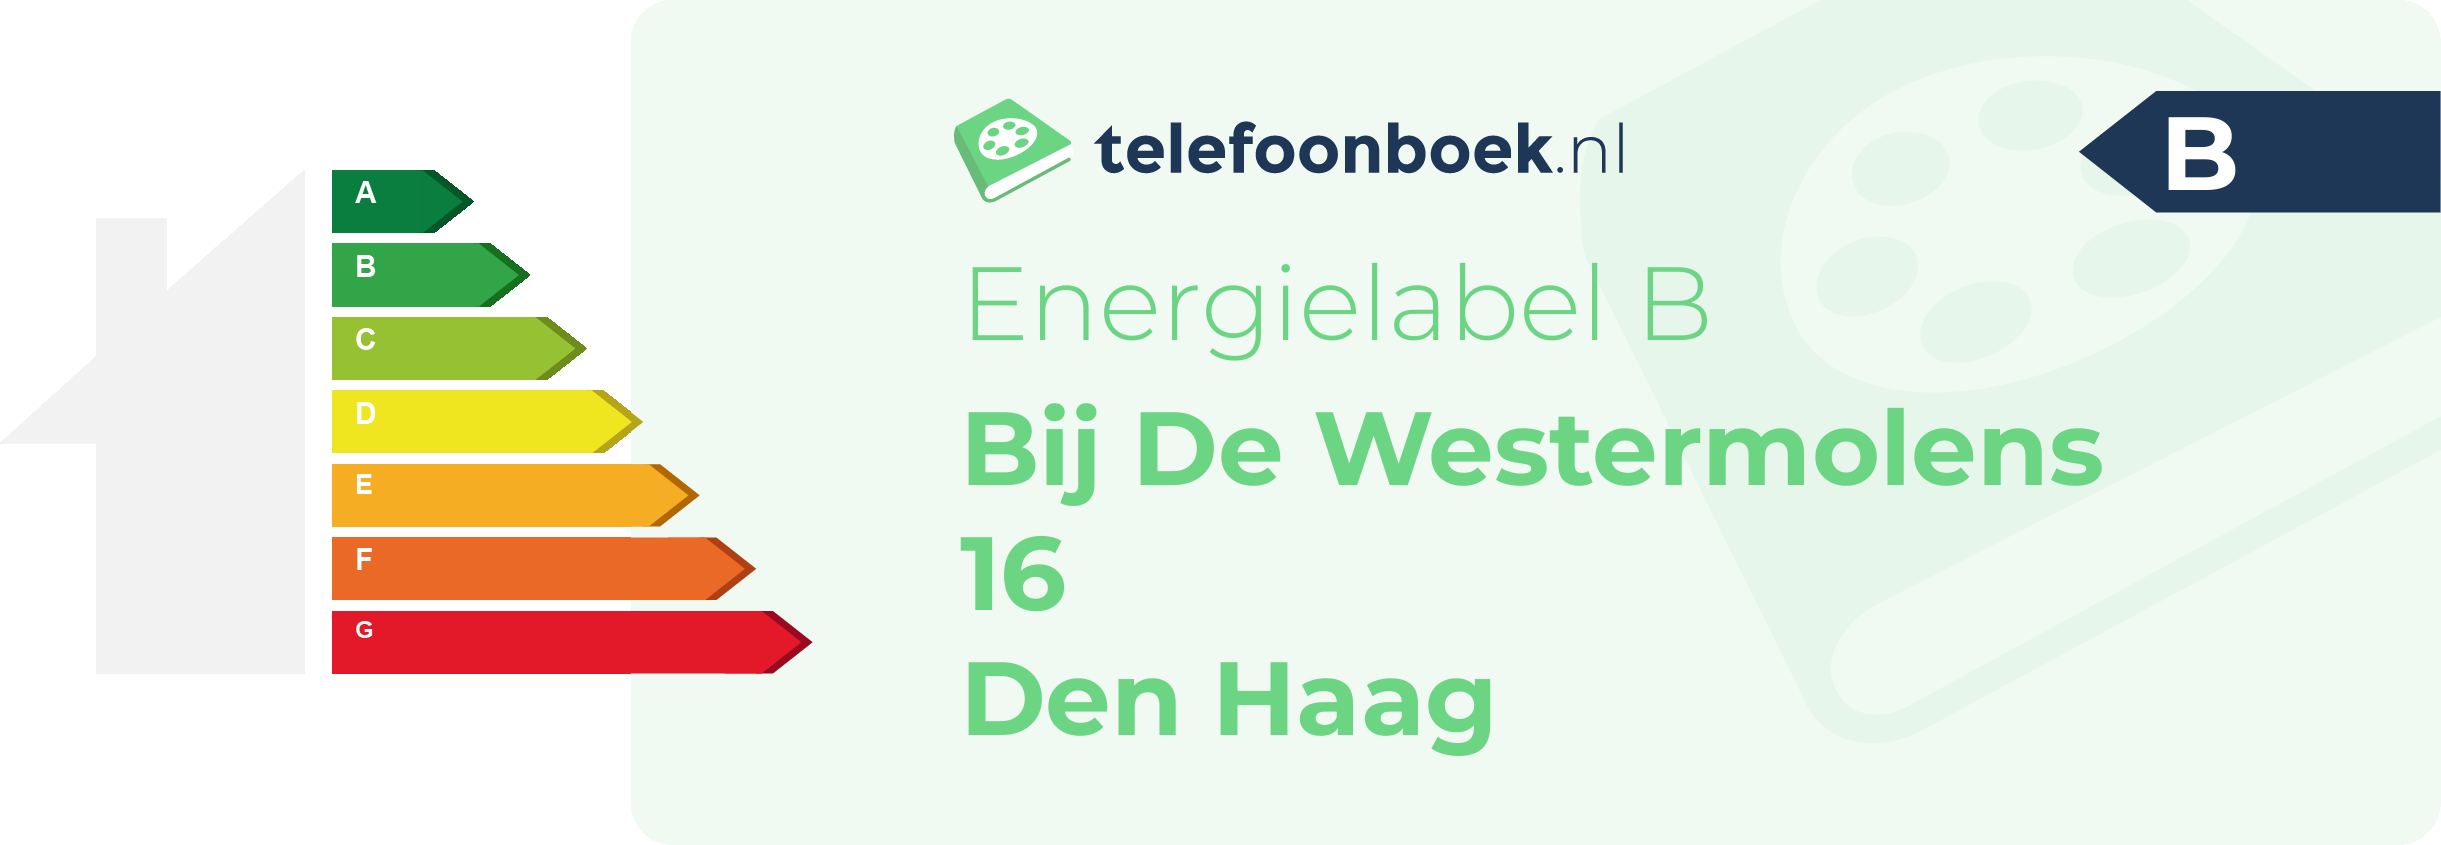 Energielabel Bij De Westermolens 16 Den Haag